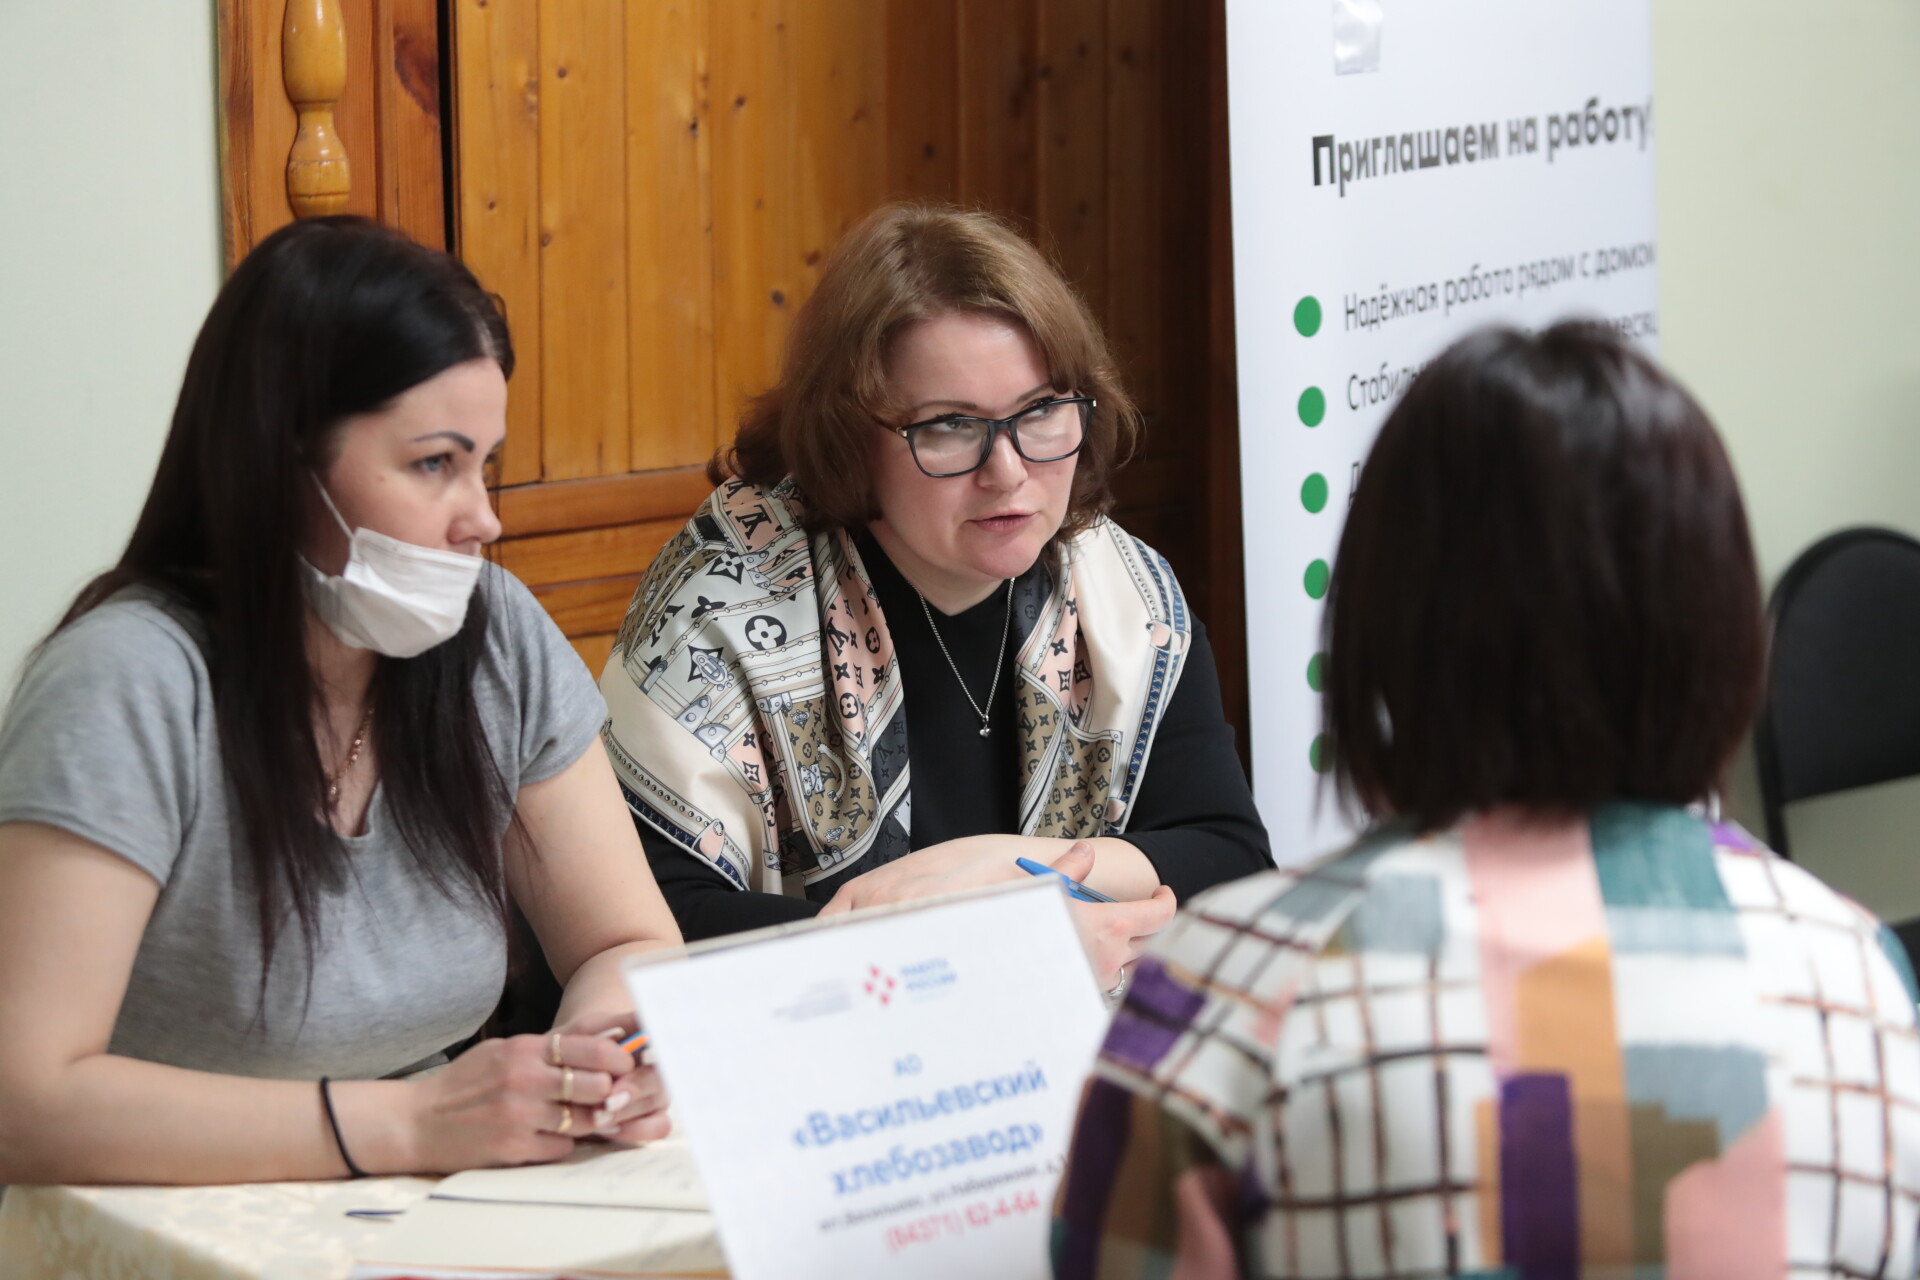 Татарстан вошел в топ регионов-лидеров по числу вакансий для граждан с инвалидностью